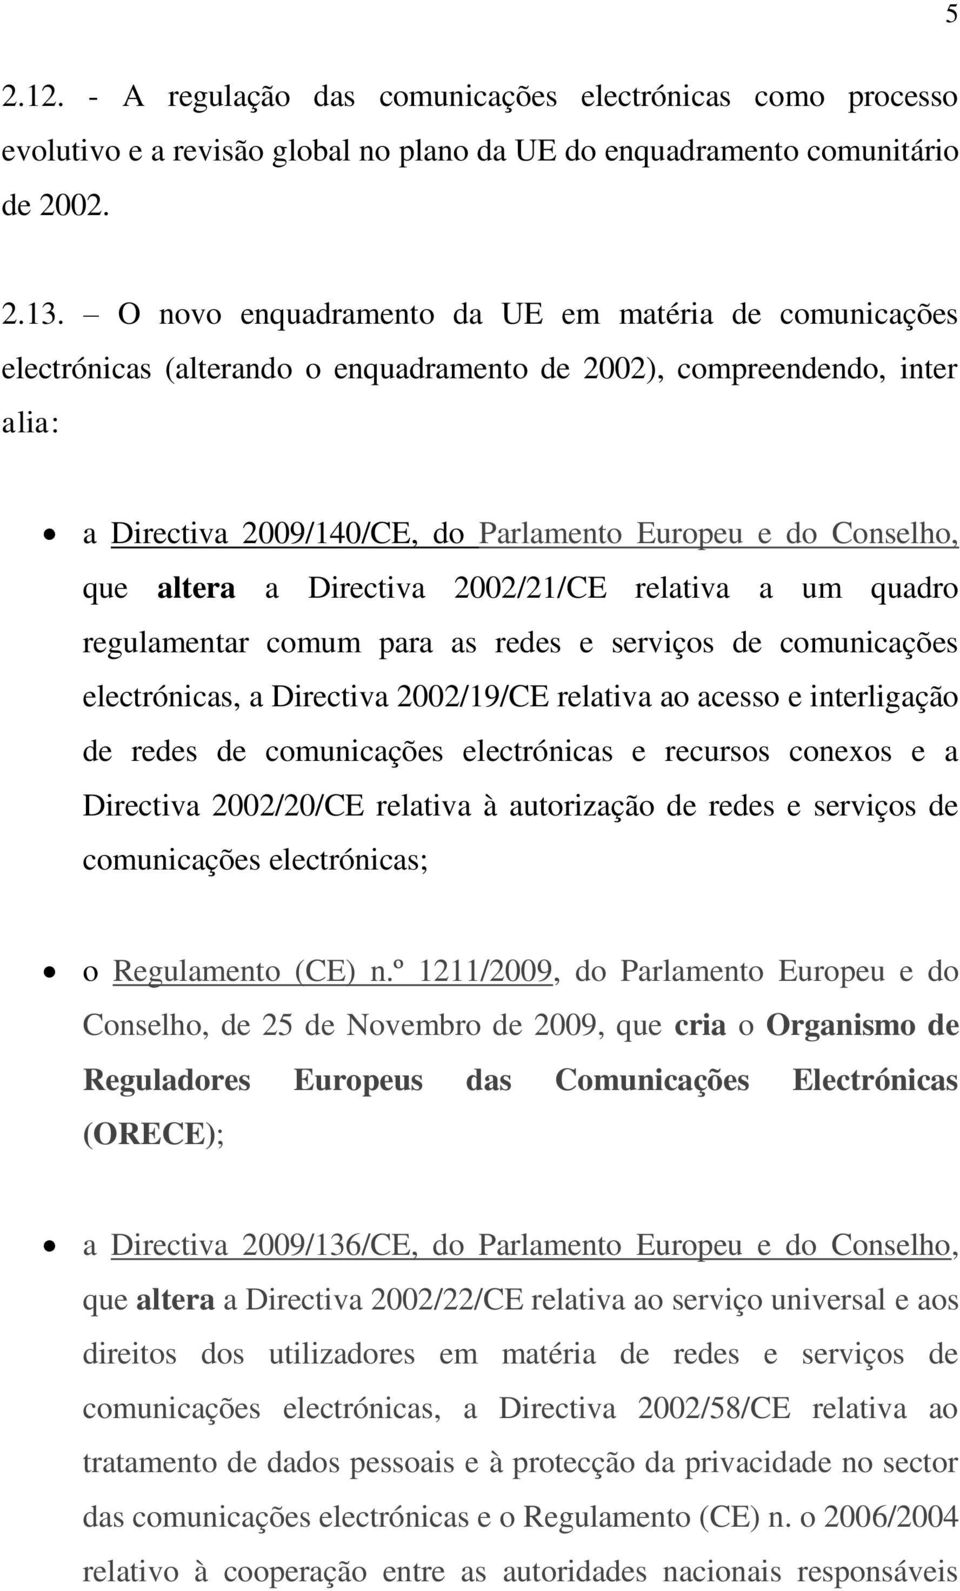 altera a Directiva 2002/21/CE relativa a um quadro regulamentar comum para as redes e serviços de comunicações electrónicas, a Directiva 2002/19/CE relativa ao acesso e interligação de redes de